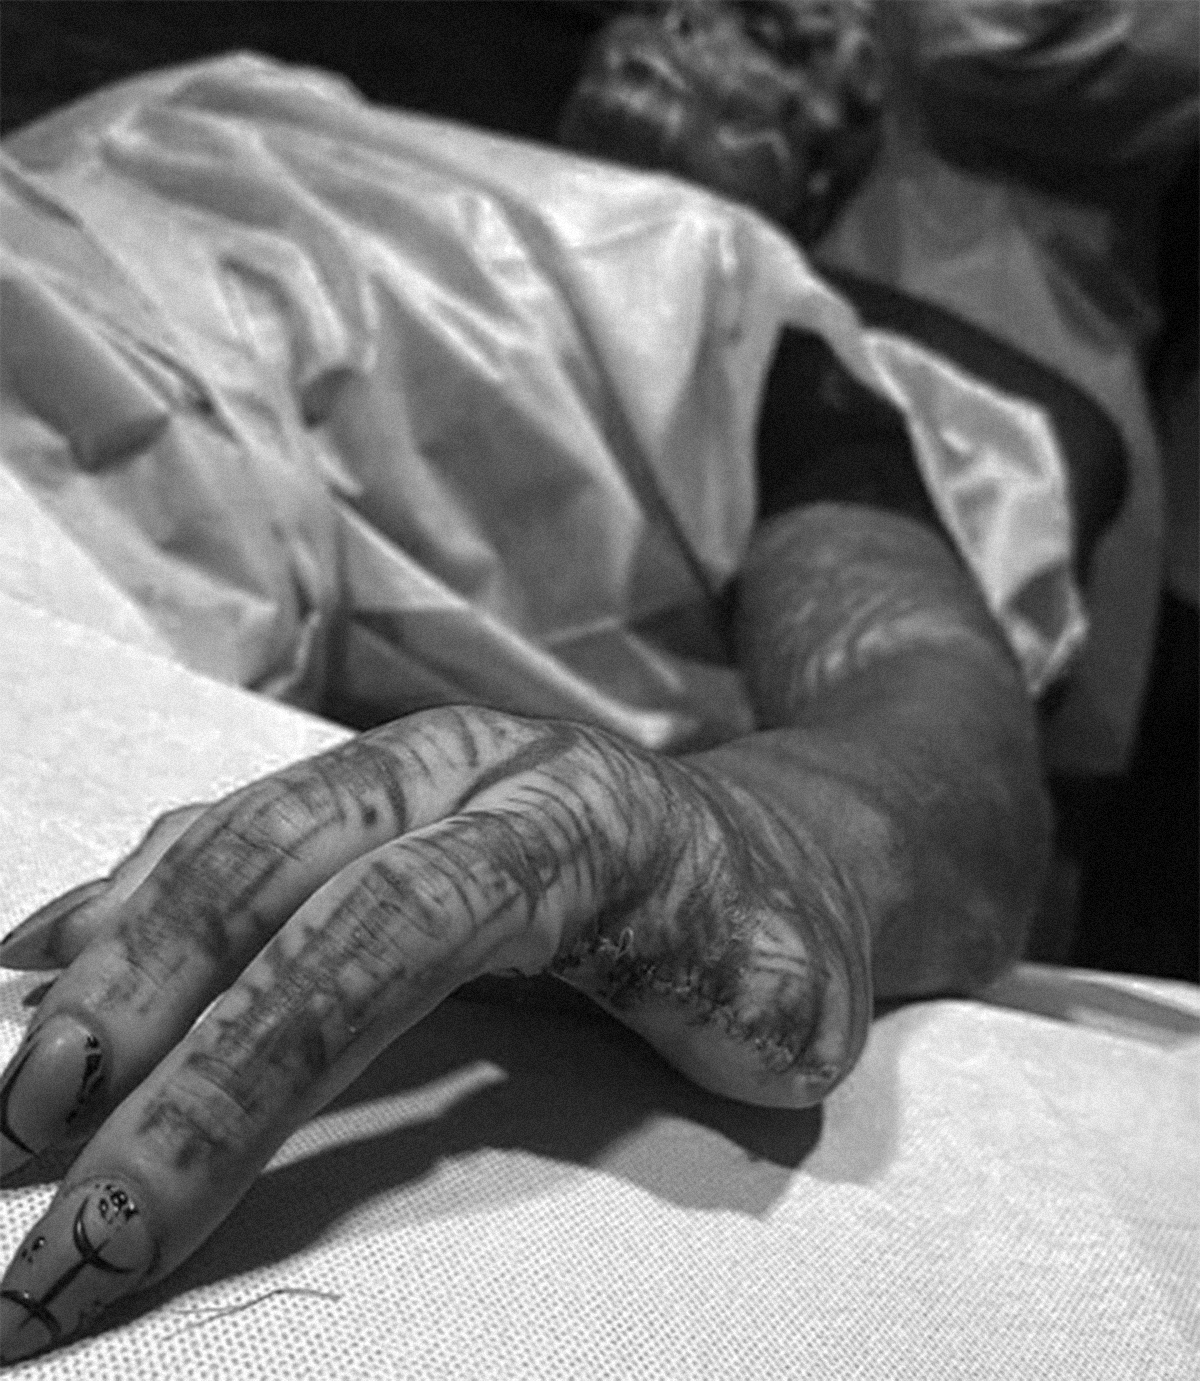 Y dos dedos amputados (del hombre que se ha tatuado hasta los ojos)